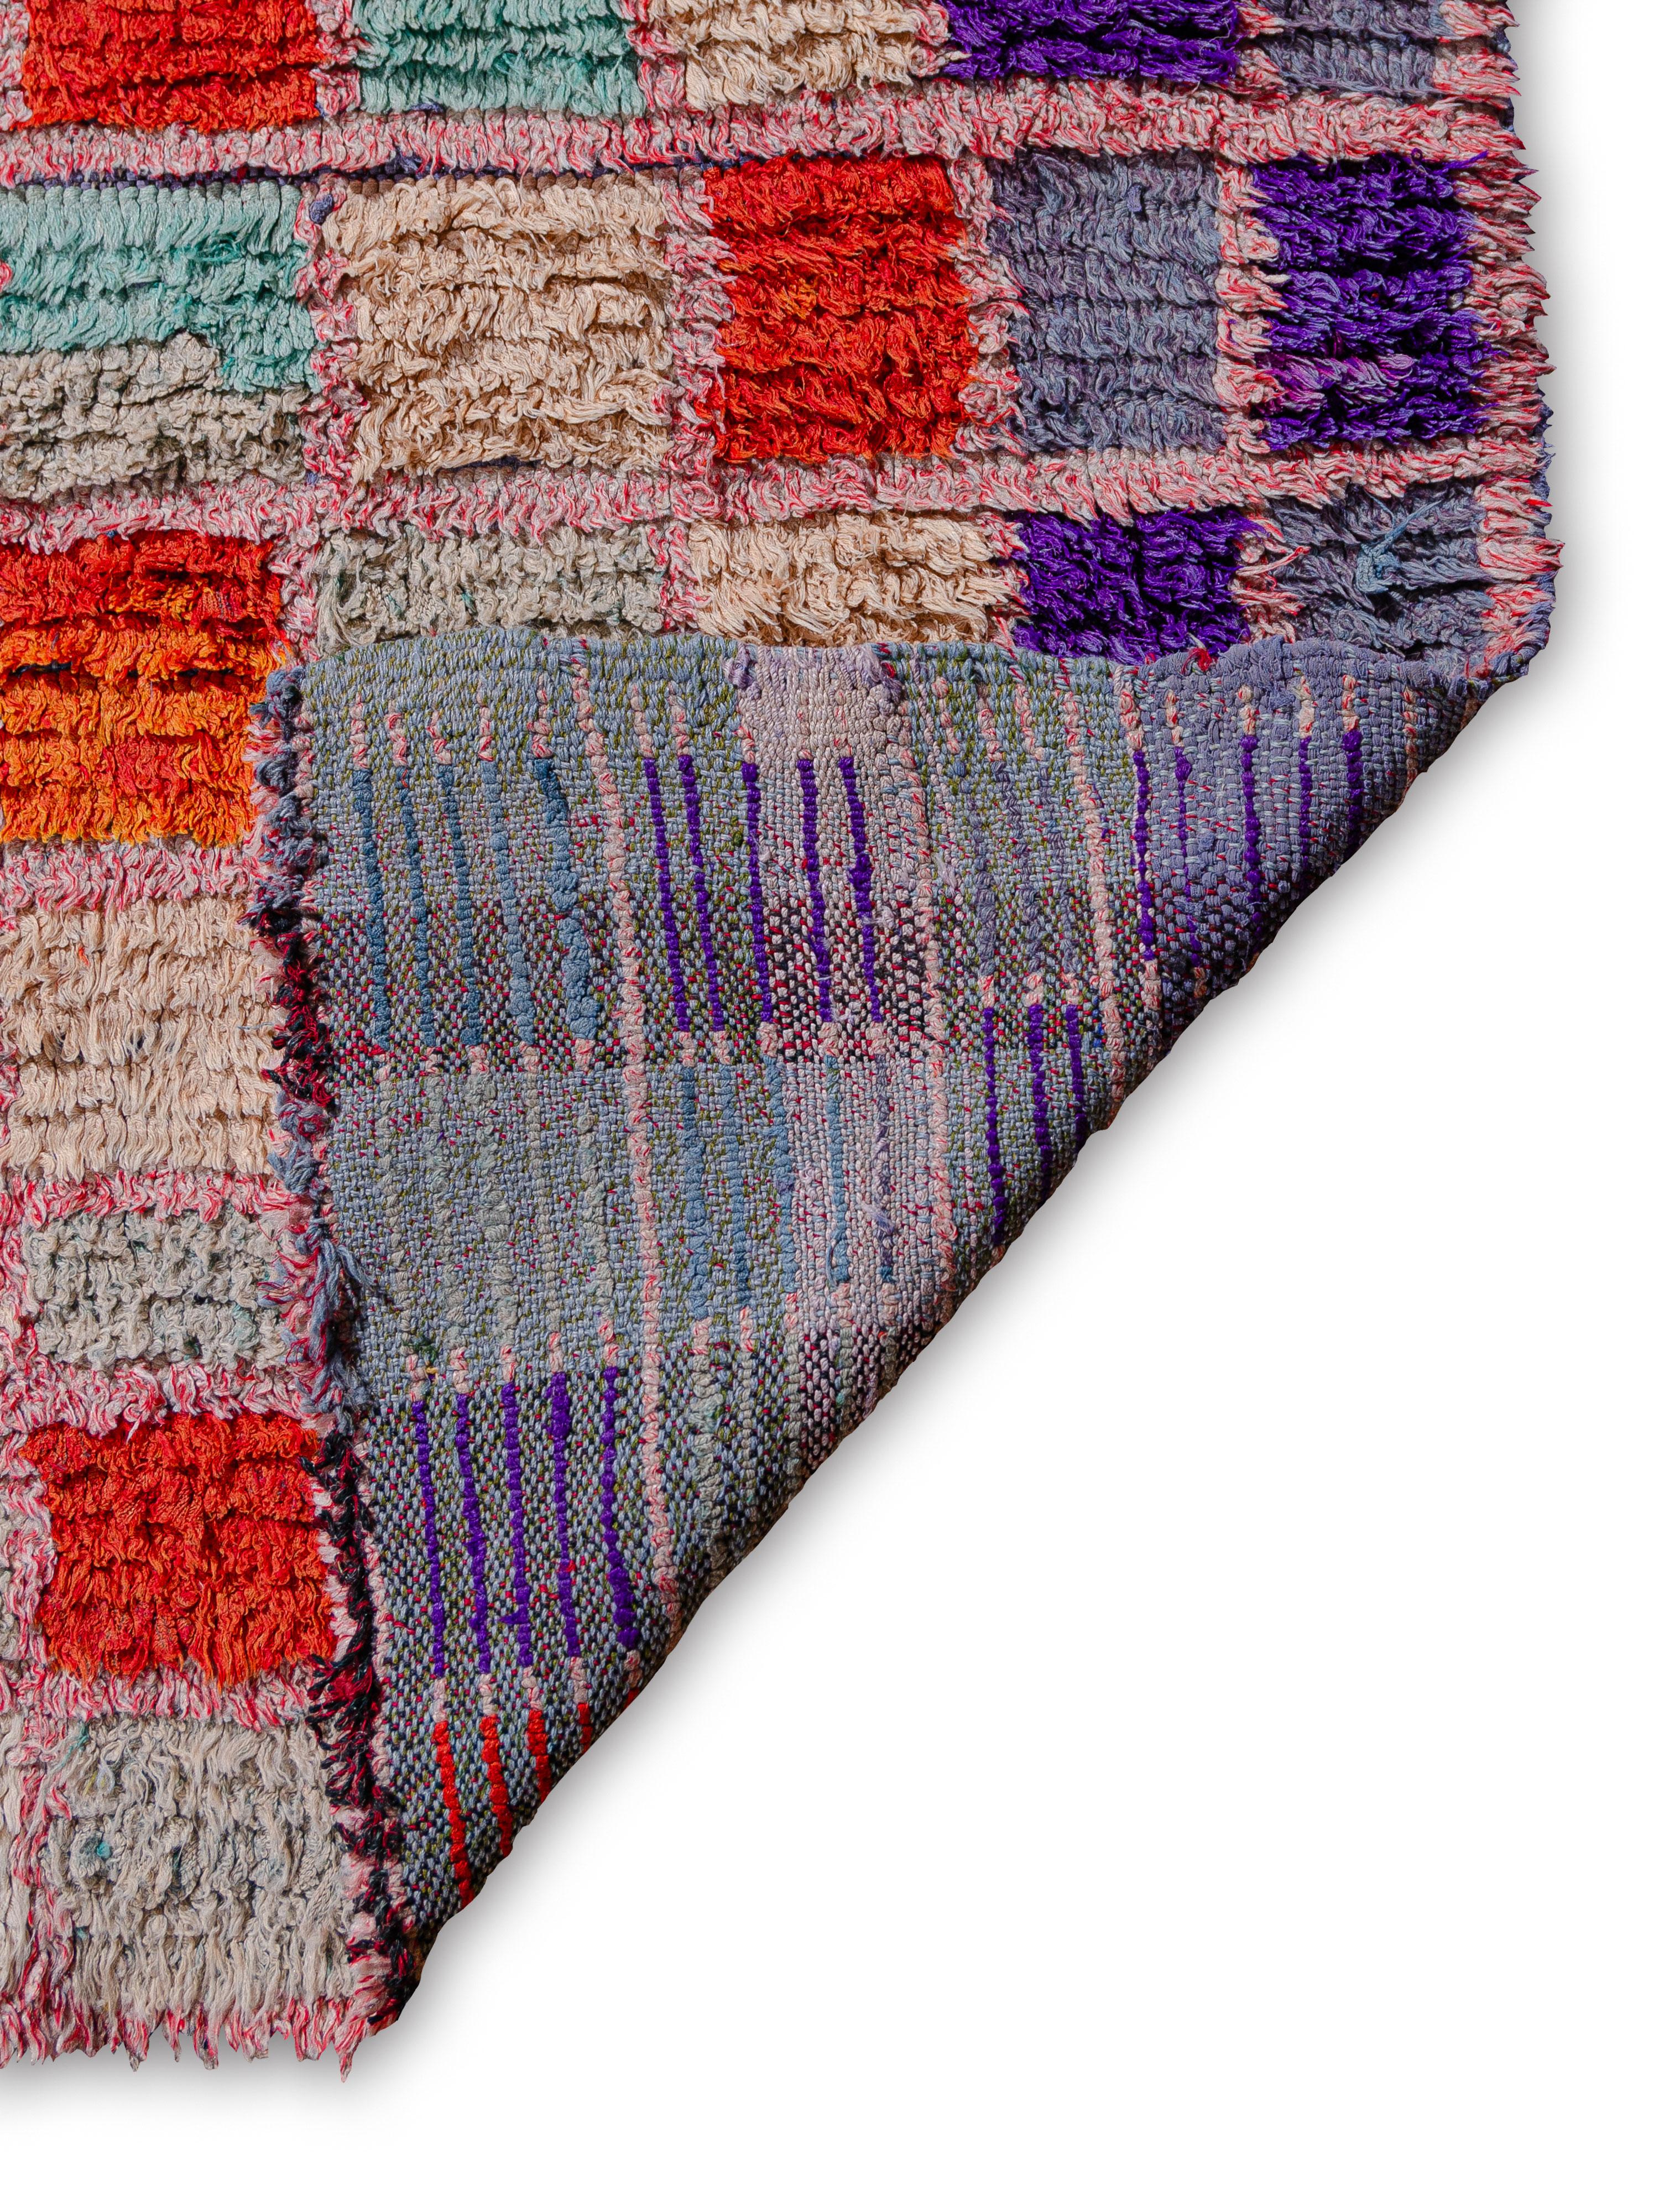 Lebhaft karierter marokkanischer Boucherouite-Teppich im Vintage-Stil, kuratiert von Breuckelen Berber. (Marokkanisch)